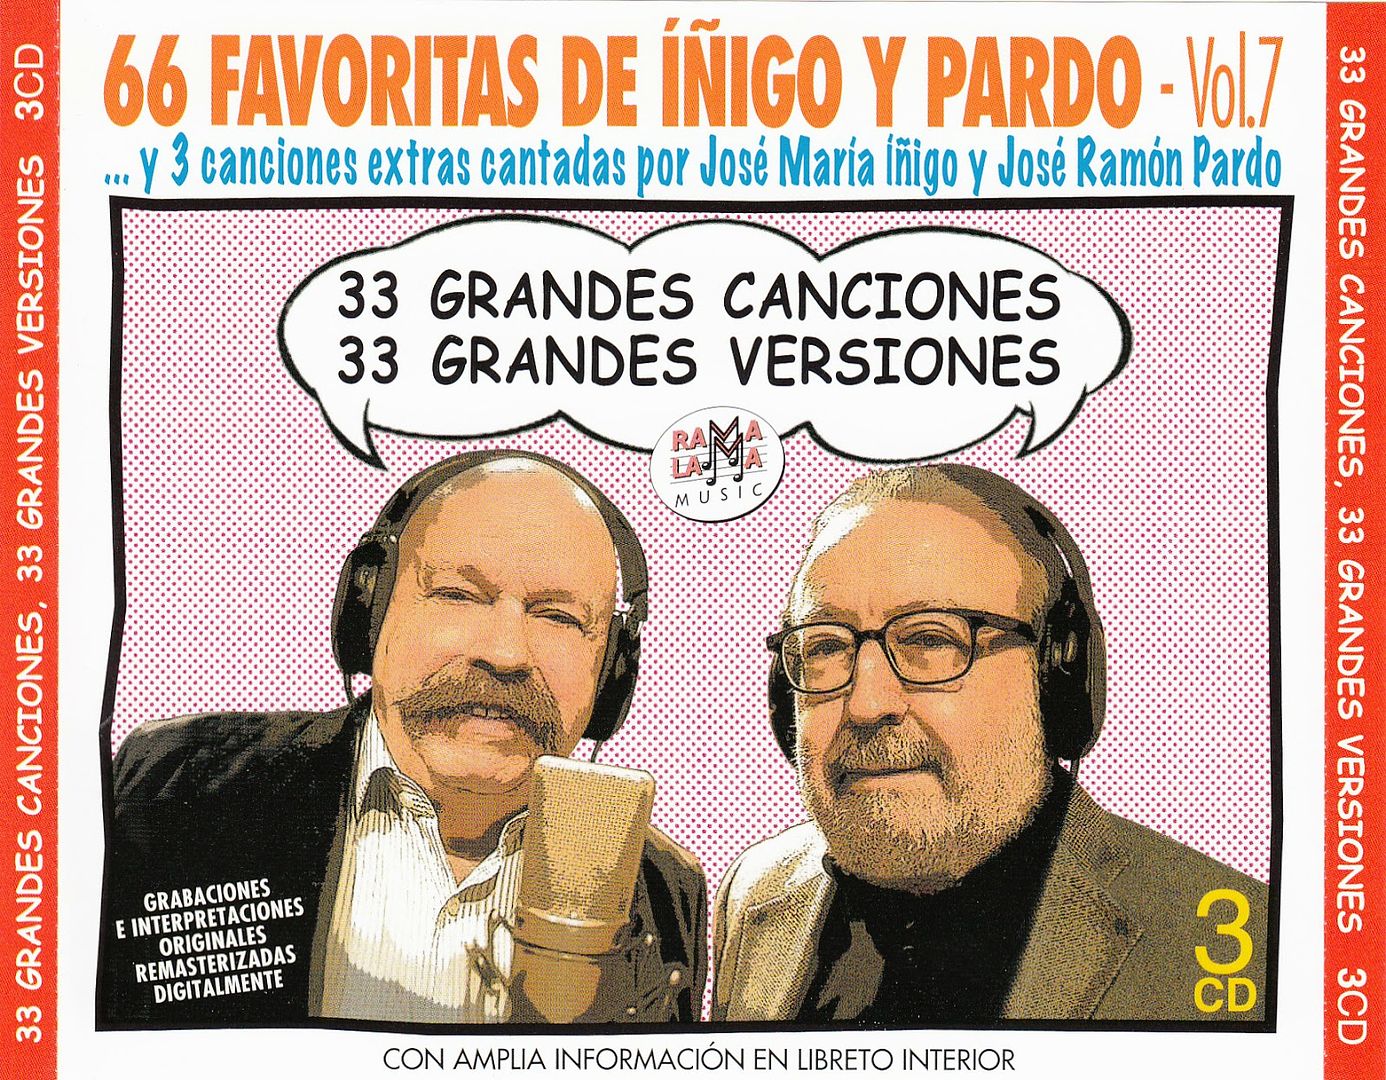 IMG - 66 Favoritas de Iñigo y Pardo Vol.7 (3 CDS)